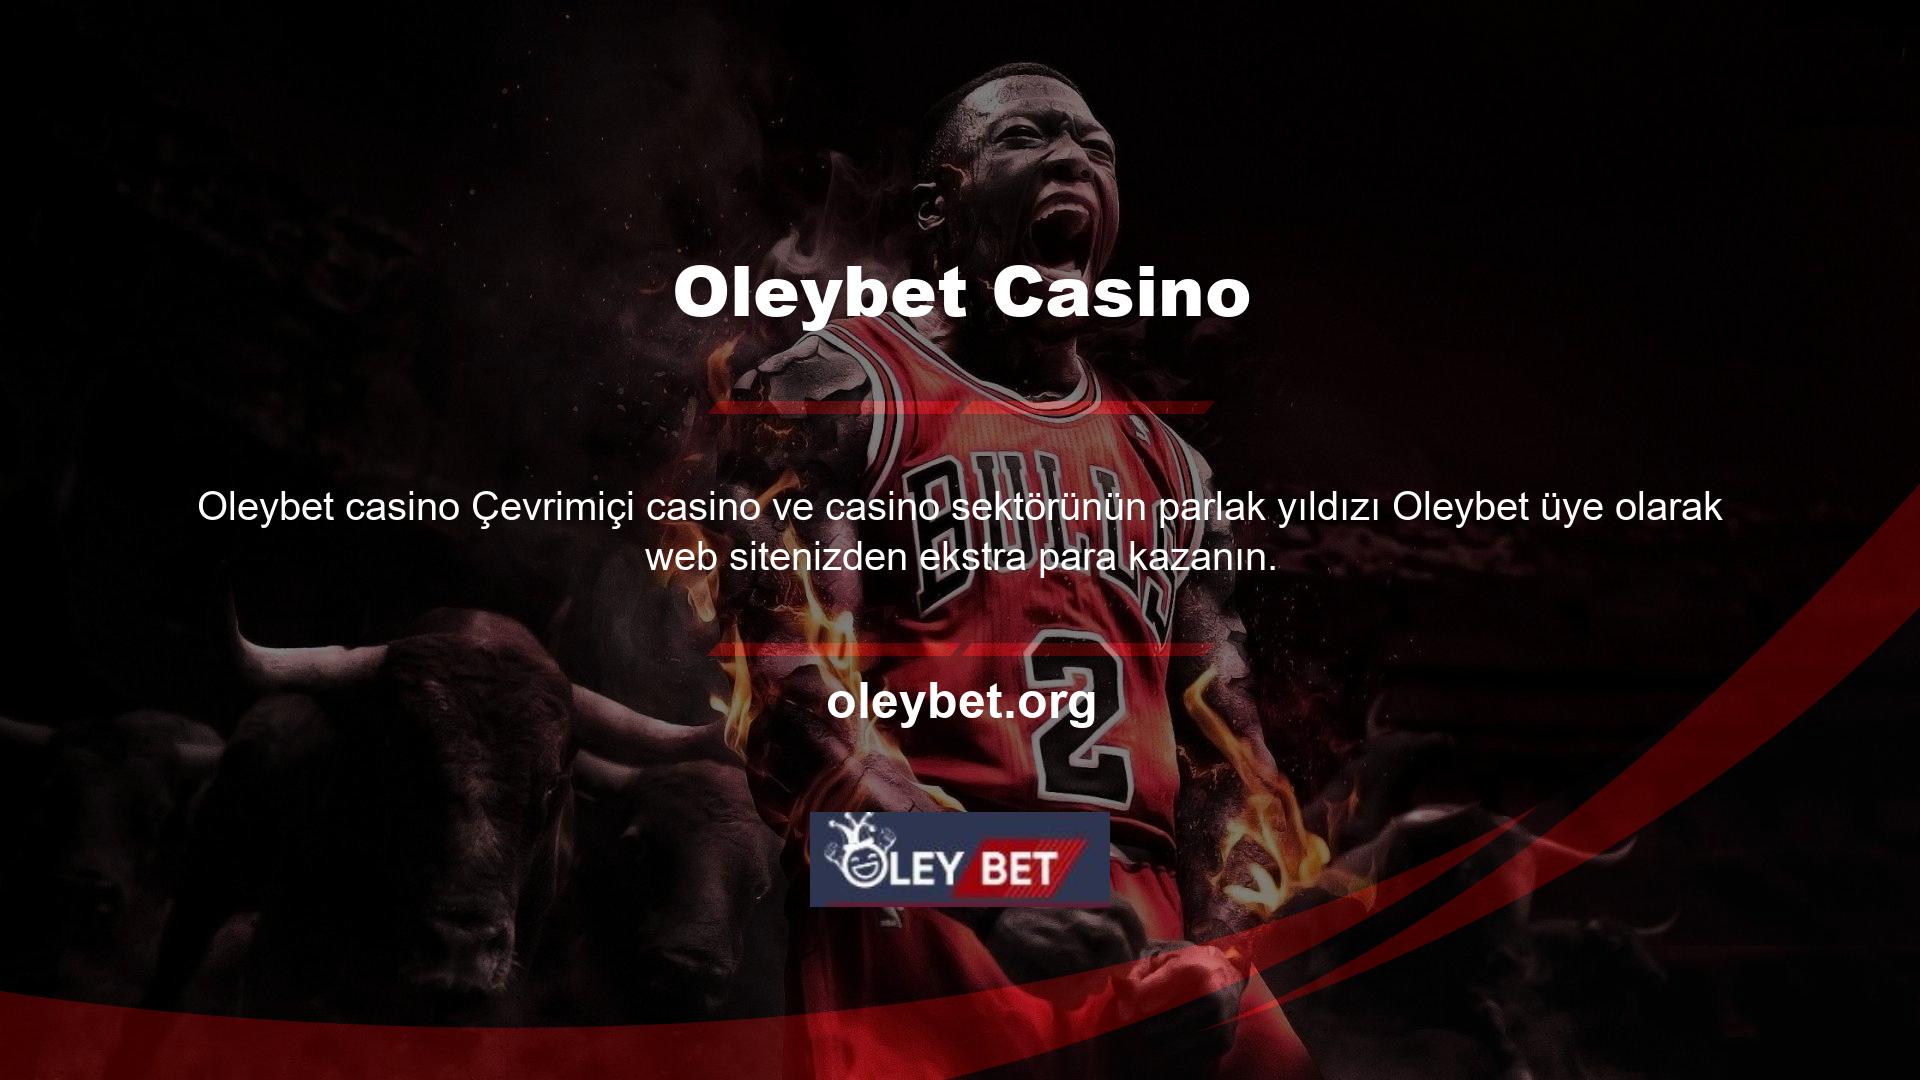 Oleybet giriş yaptığı çevrimiçi bahis ve casino sitesi, üyelerine spor ve bahis ana kategorilerinde çeşitli seçenekler sunar